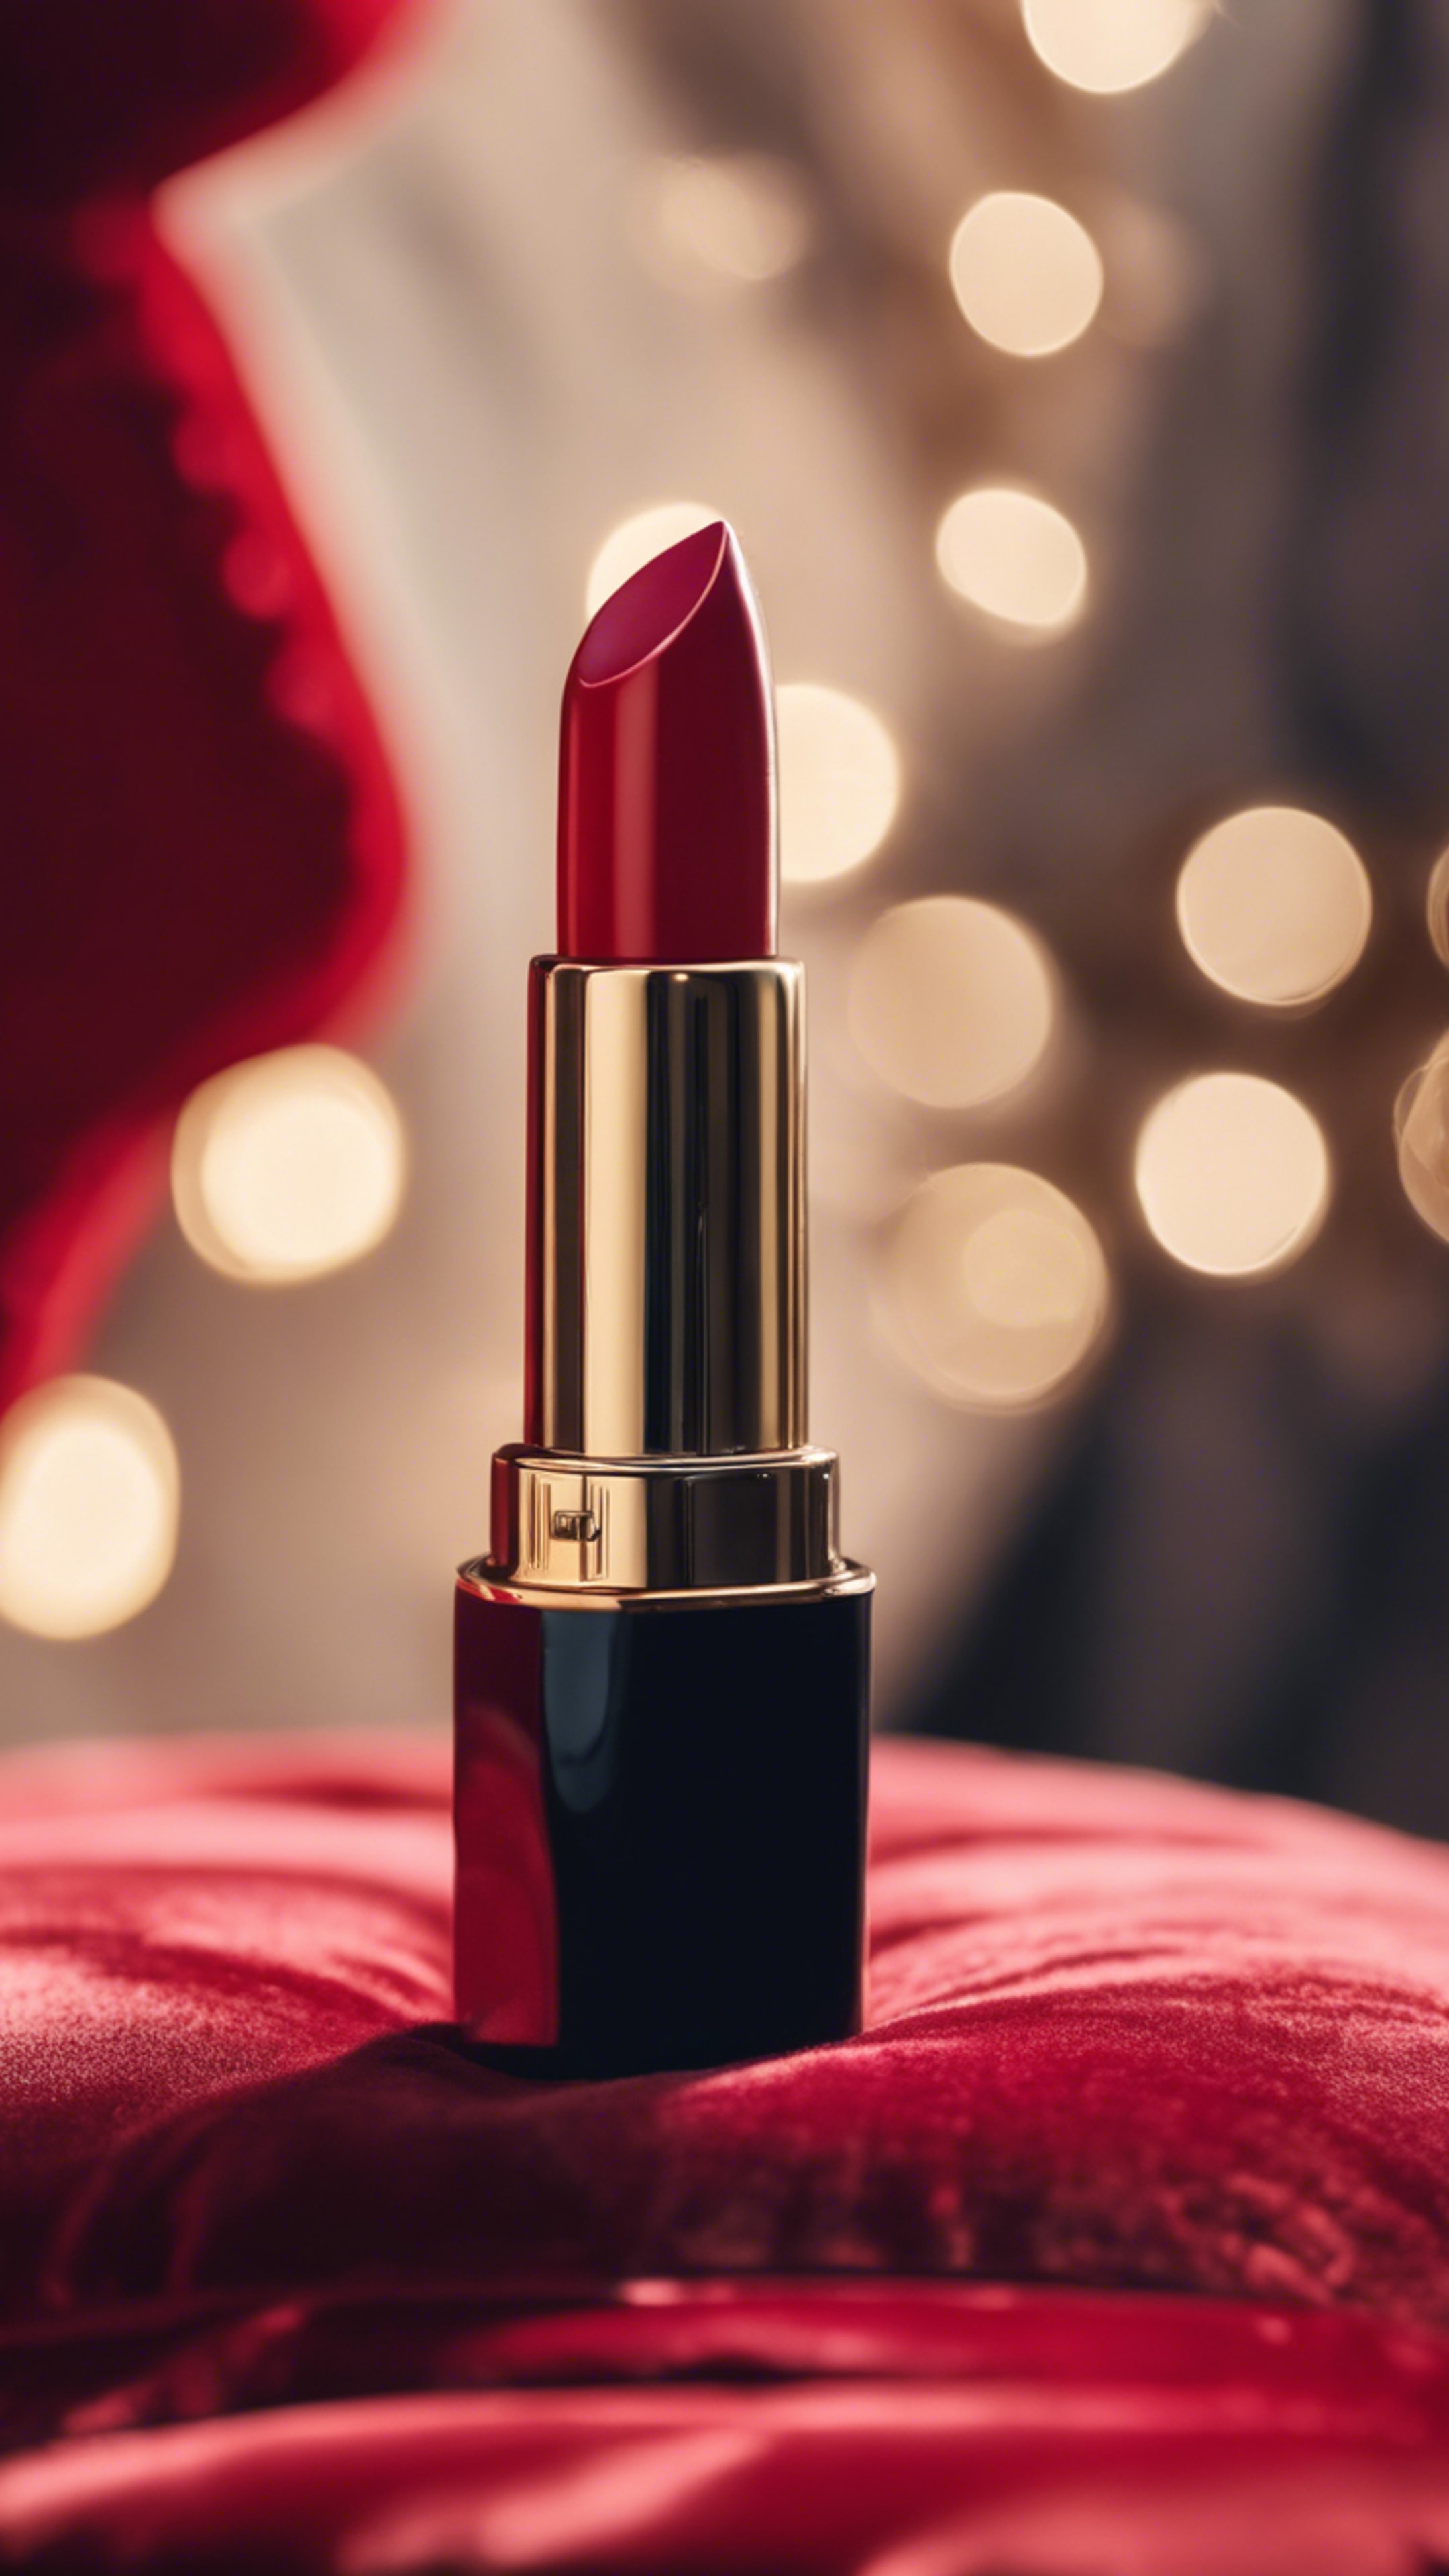 A luxury red lipstick displayed on a plush velvet cushion. Hình nền[becb77b7269f4dbdb5b5]